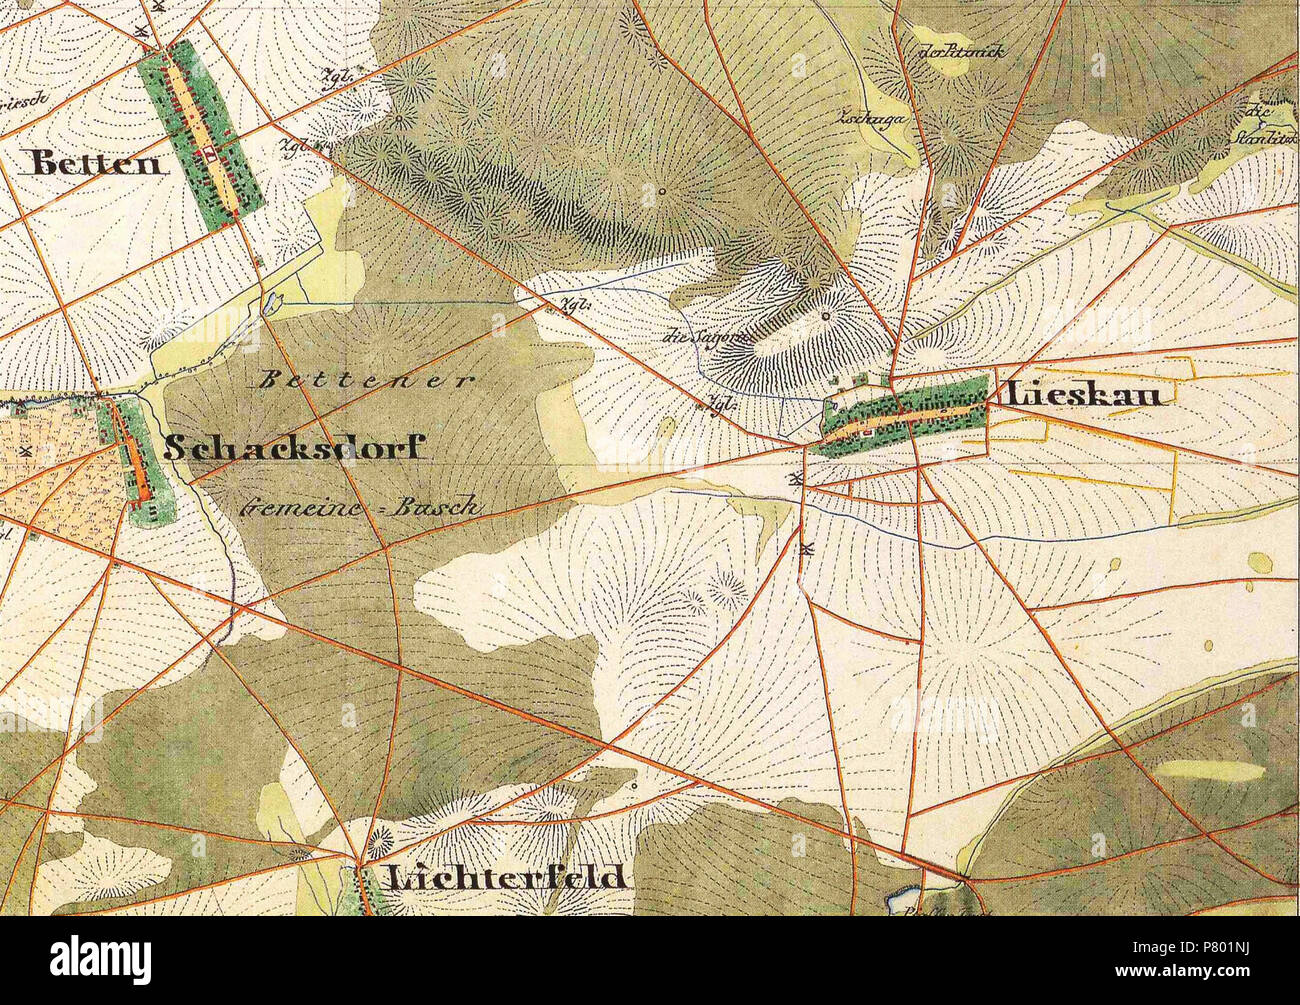 4348] Lichterfeld Finsterwalde Schacksdorf Lieskau Betten. Foto Stock